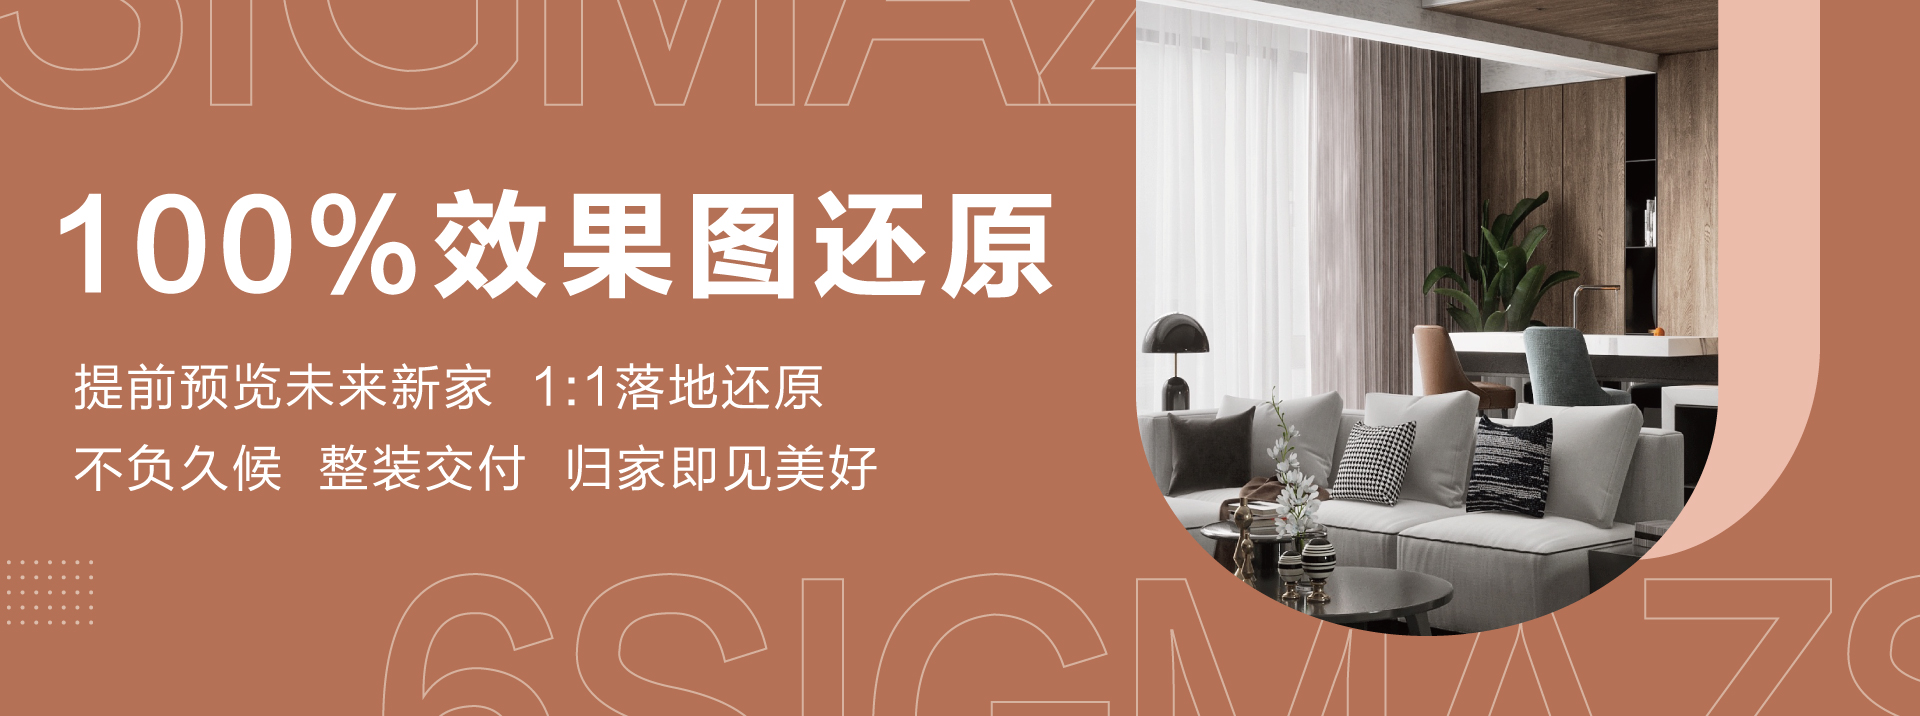 操香港女屄六西格玛装饰活动海报